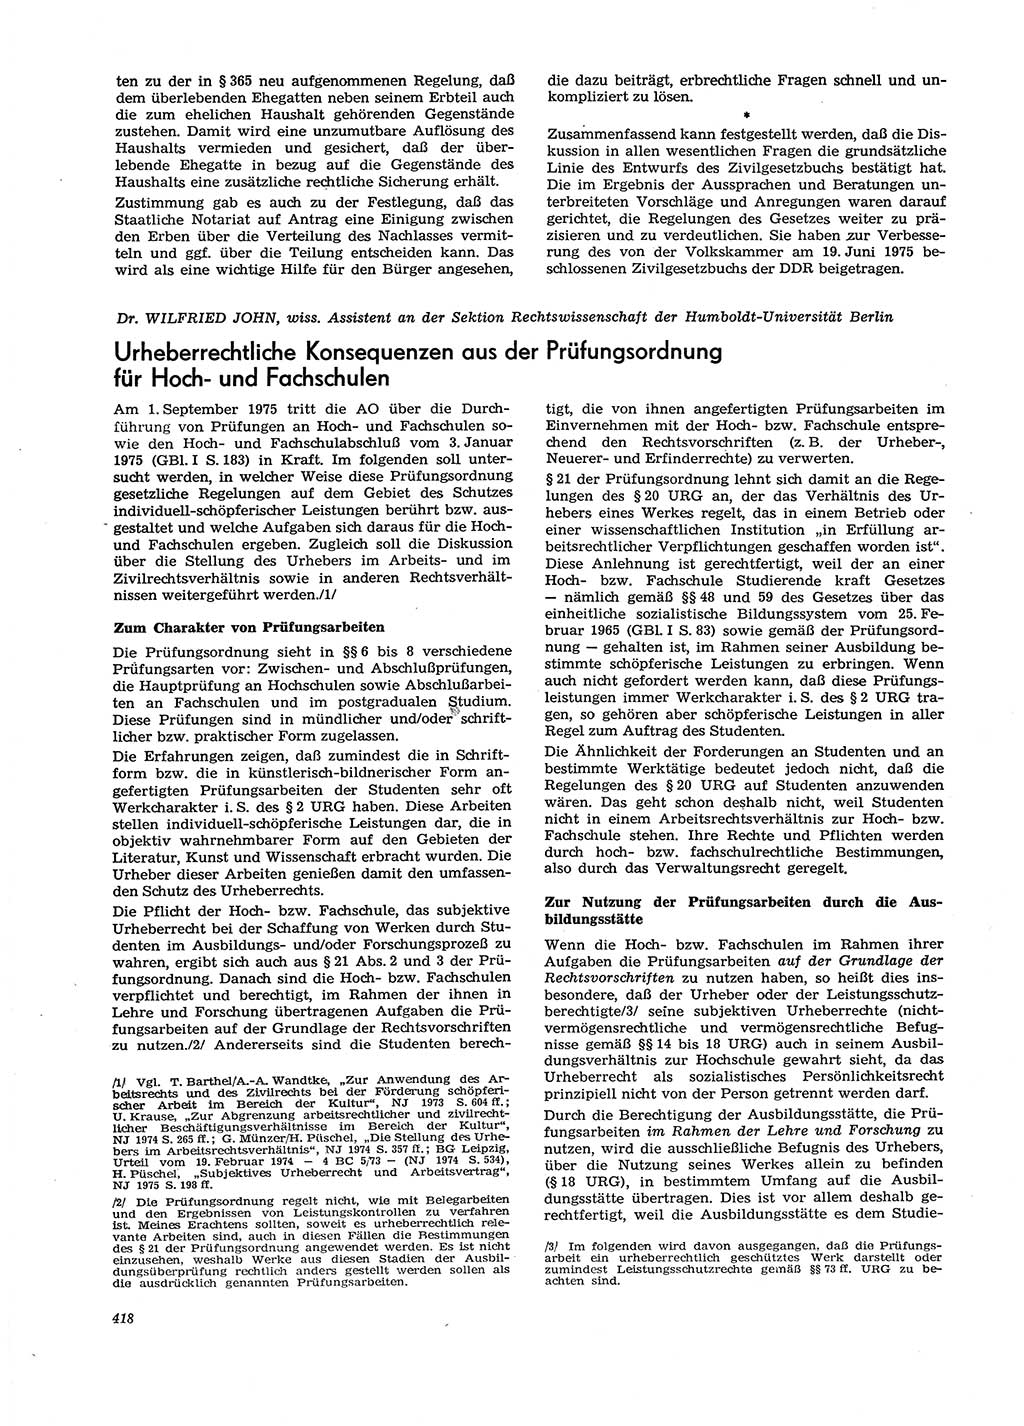 Neue Justiz (NJ), Zeitschrift für Recht und Rechtswissenschaft [Deutsche Demokratische Republik (DDR)], 29. Jahrgang 1975, Seite 418 (NJ DDR 1975, S. 418)